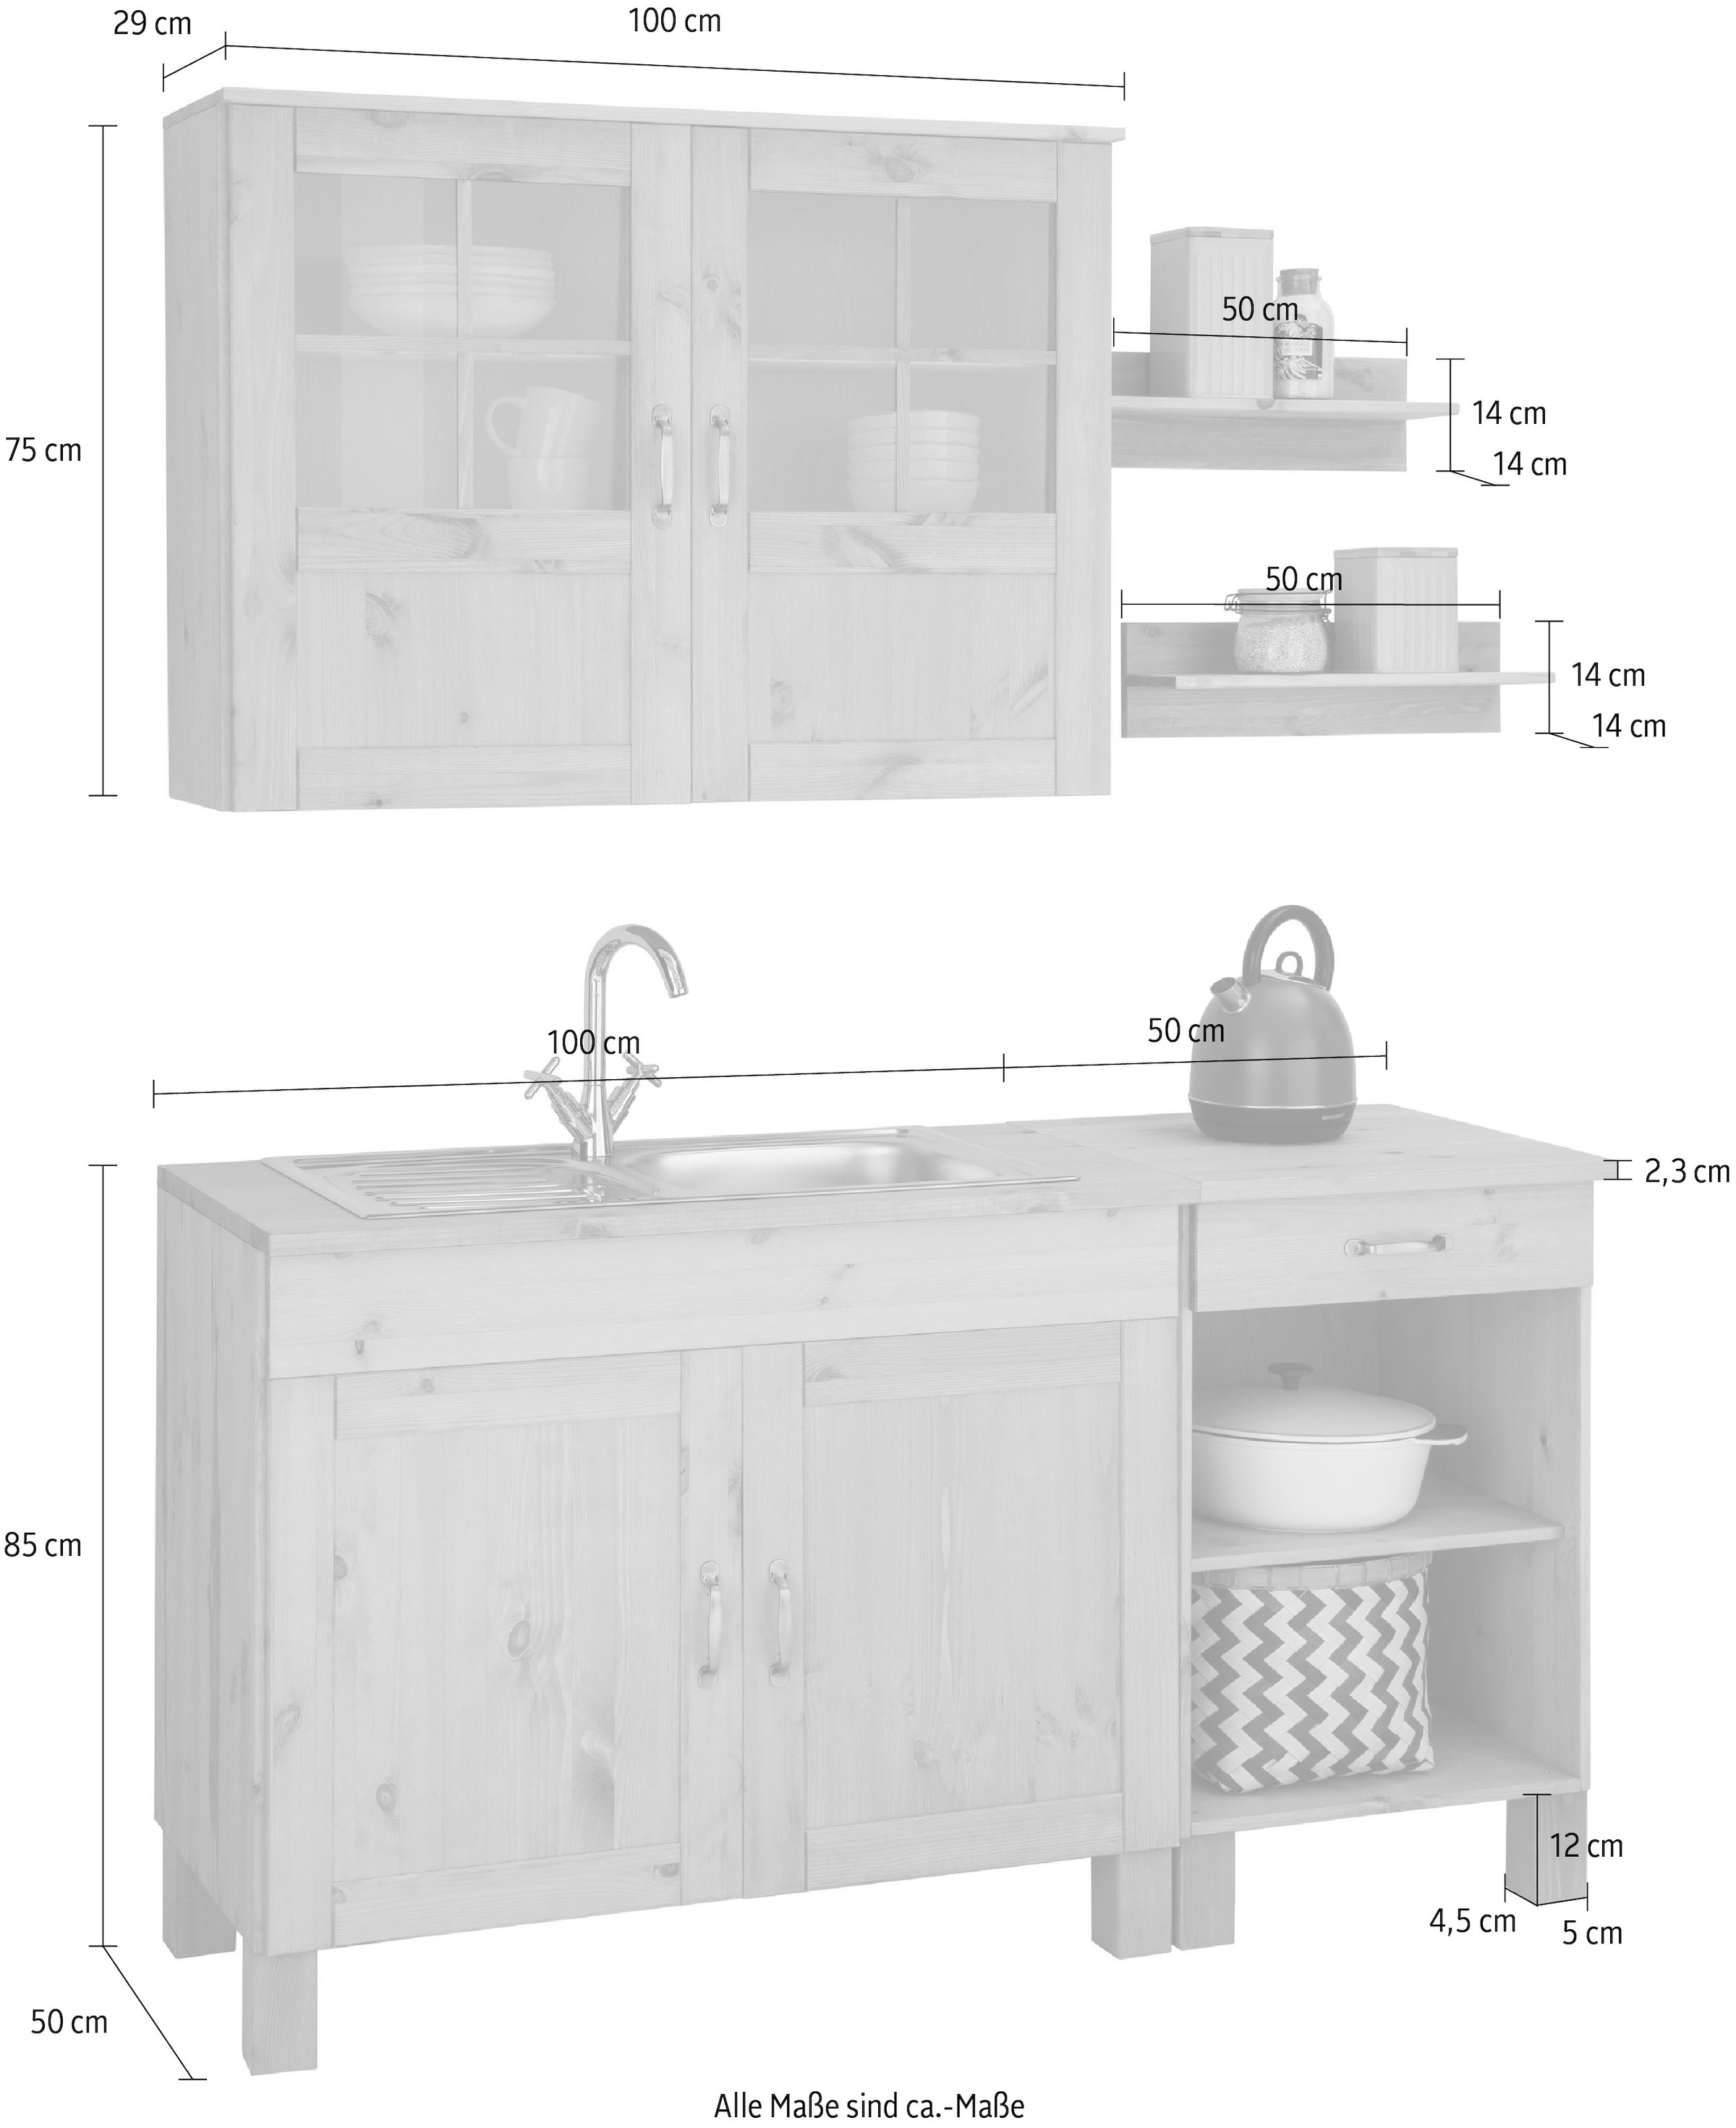 Home affaire Küchenzeile »Alby«, Breite 150 cm, in 2 Tiefen, ohne E-Geräte